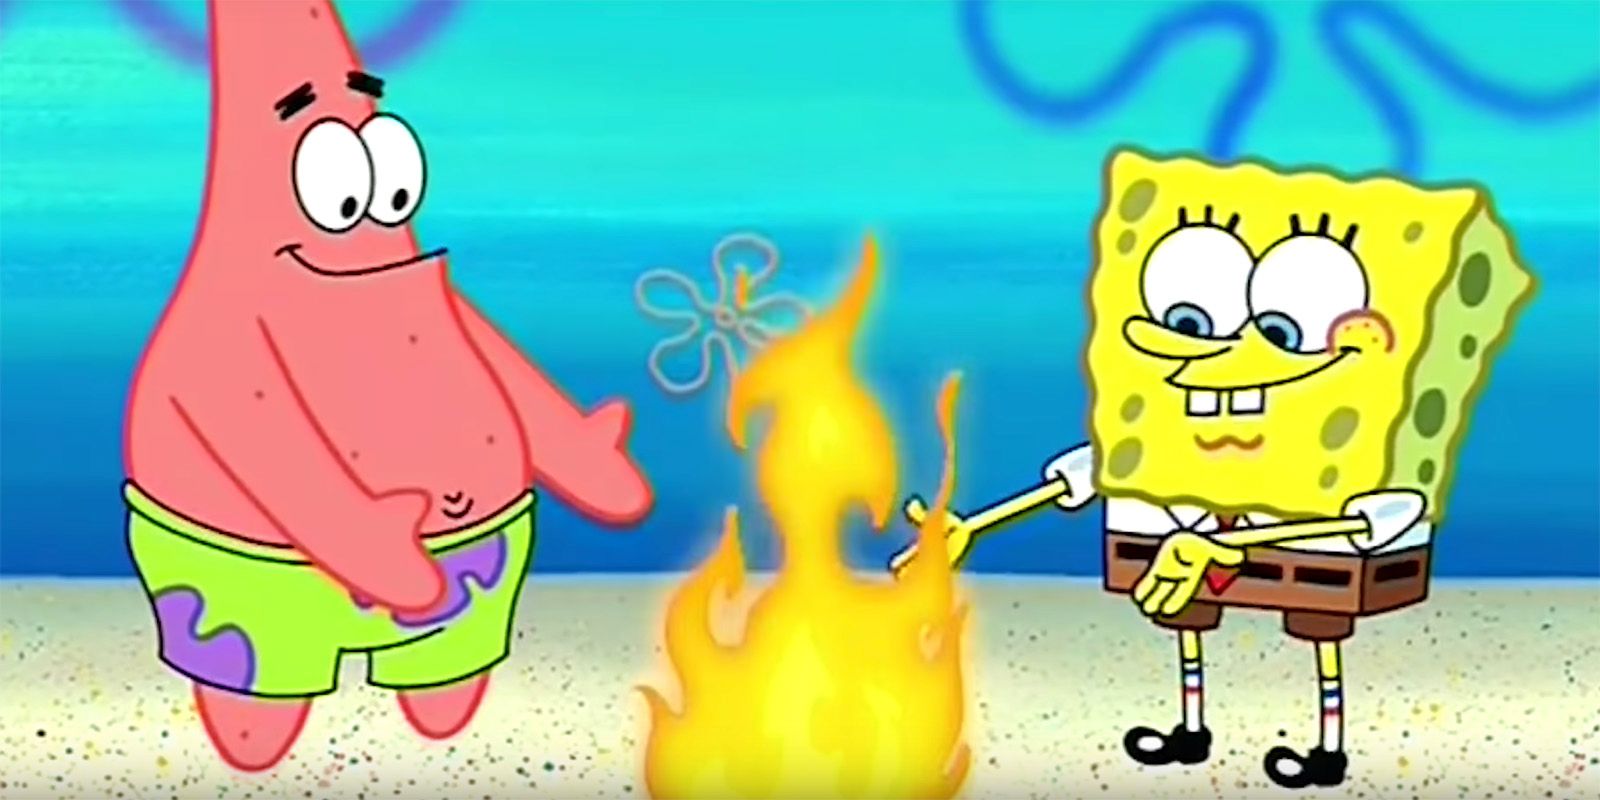 SpongeBob and Patrick light a fire